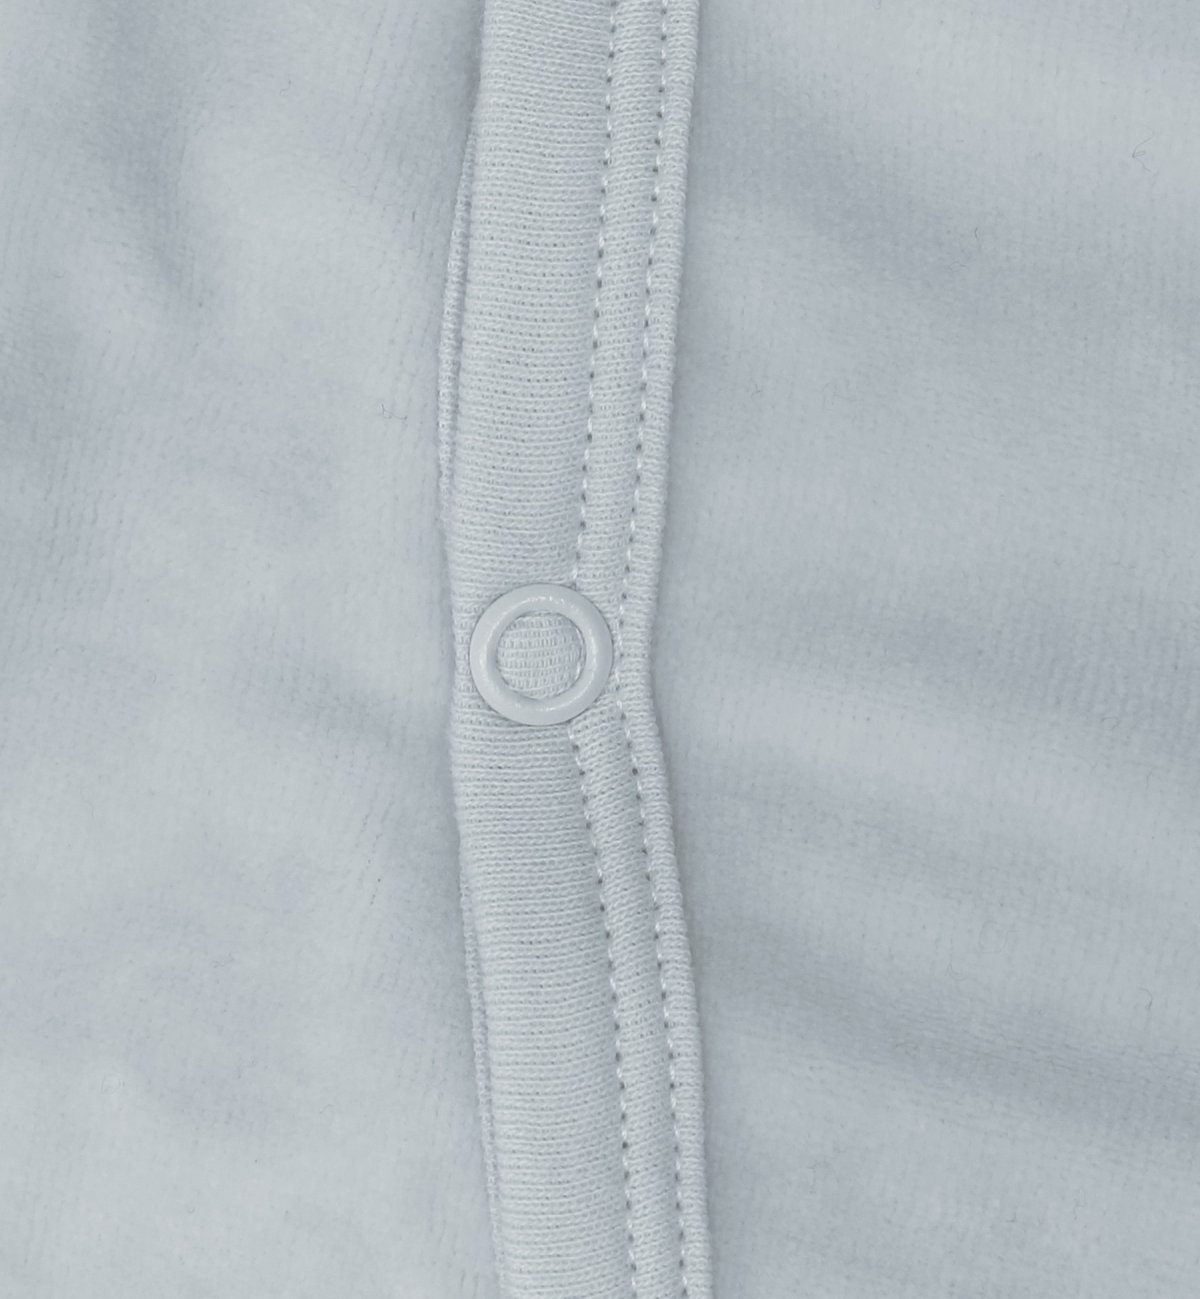 Pijama de bebé en Algodón Orgánico con estampados de plumas blancas Kadolis